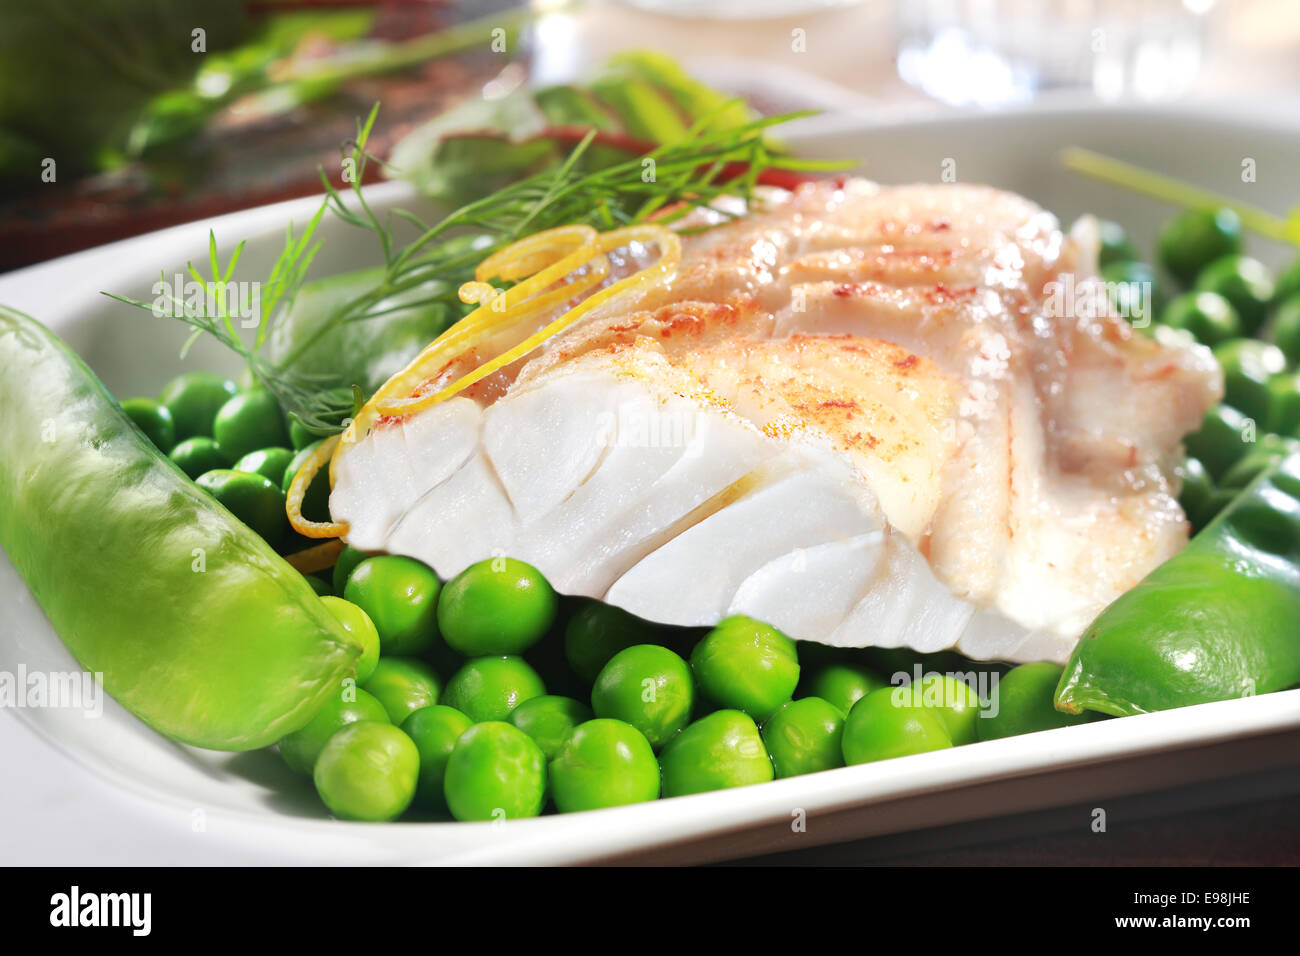 Filete de pescado a la parrilla saludable con guisantes, mangetouts la ralladura de limón y sirve en un plato como aperitivo o plato principal Foto de stock